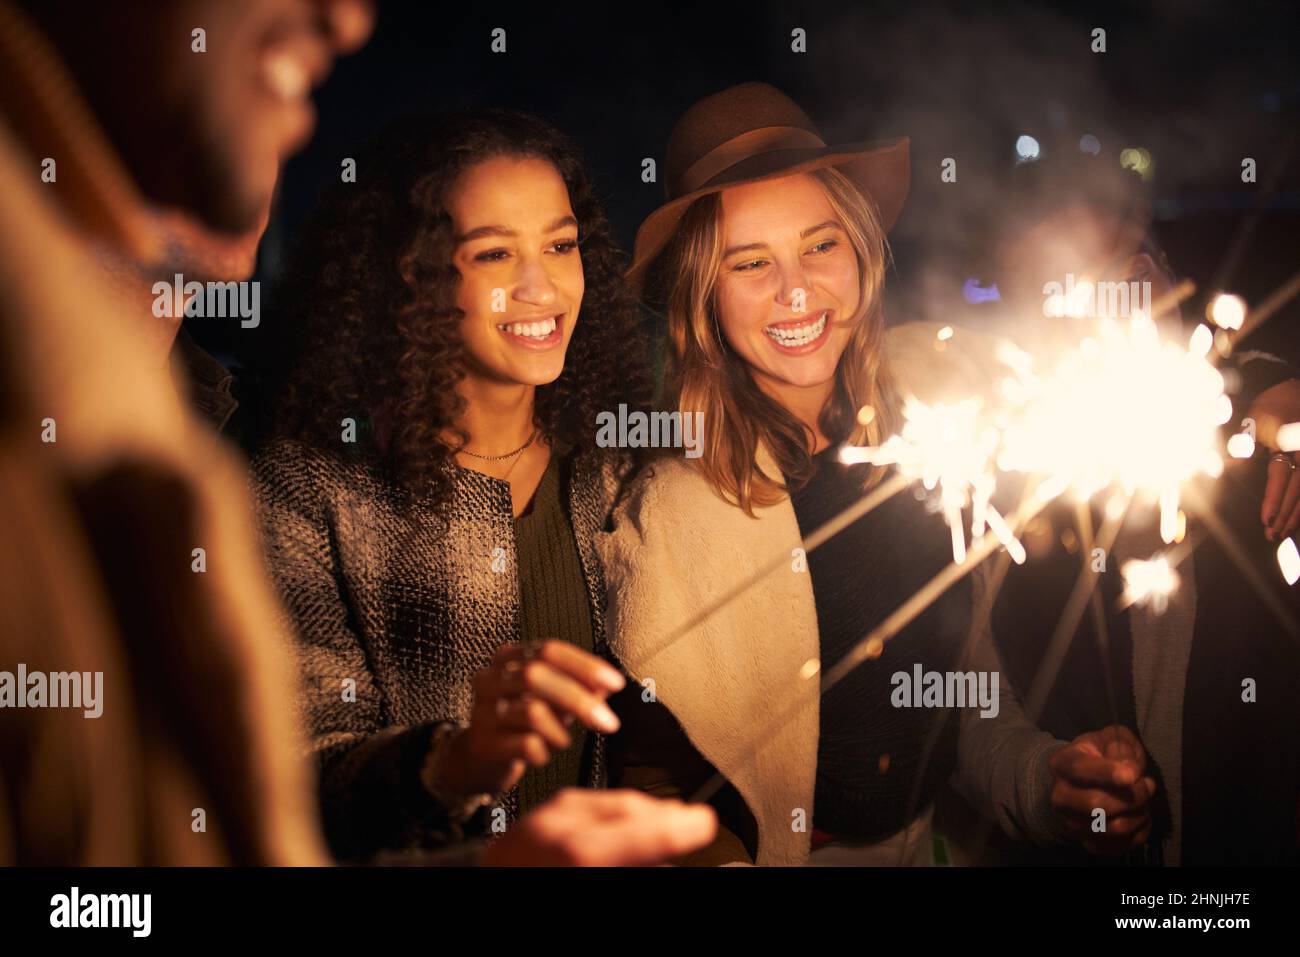 Multikulturelle, beste Freunde auf einer Dachparty, die lächelt und Funkler beleuchtet. Nachts, stilvolle Party Stockfoto